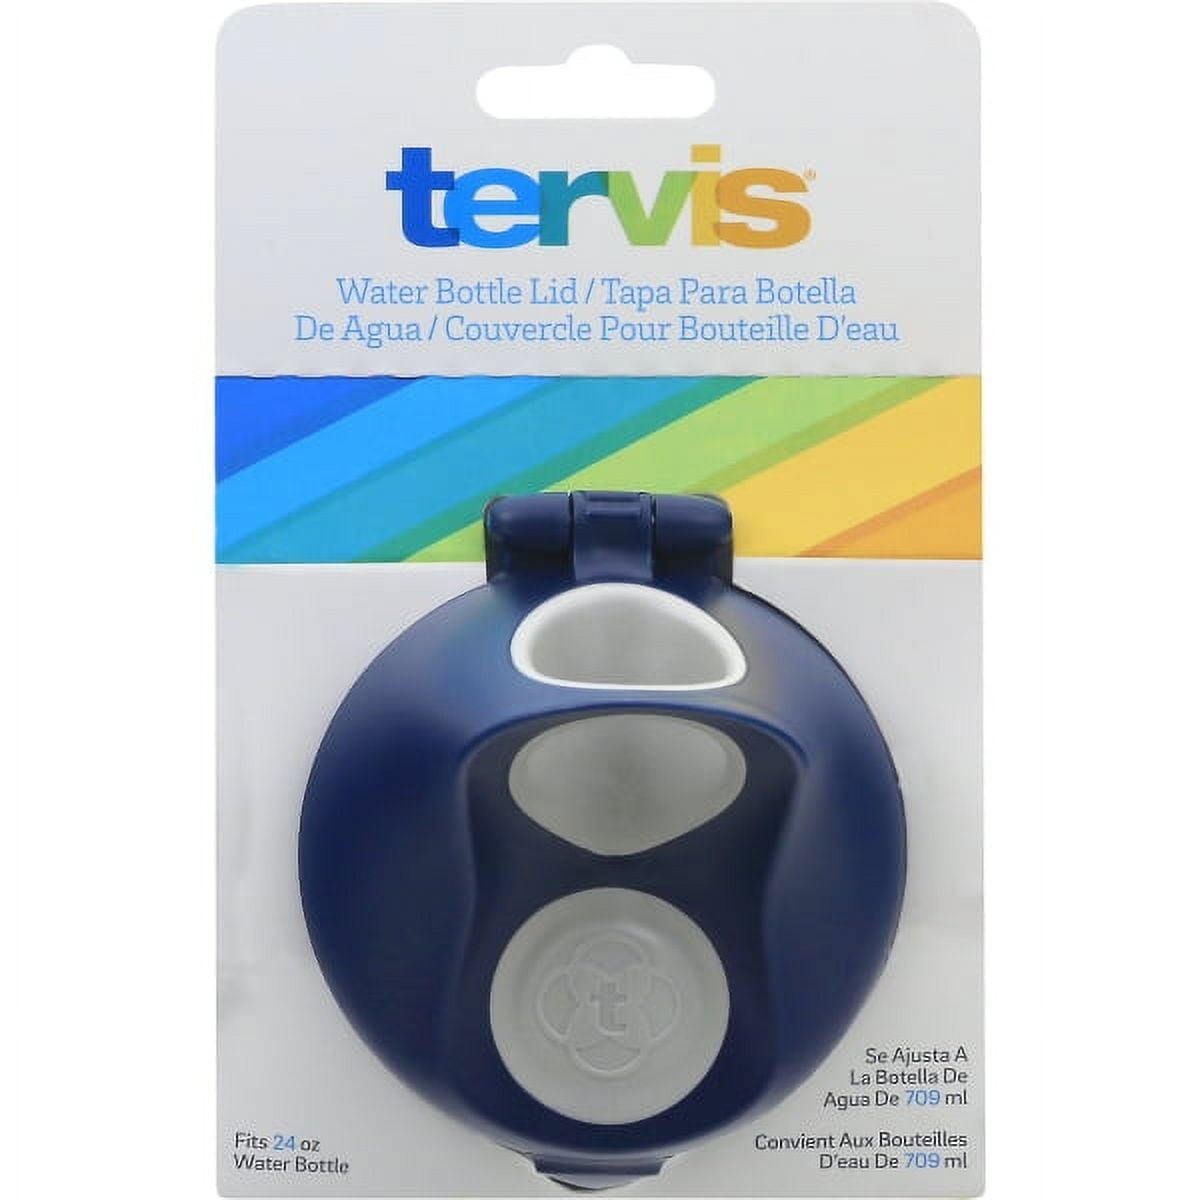 TERVIS Tumbler Lids/Water Bottle Travel Lids/Handles - Choose Size & Color